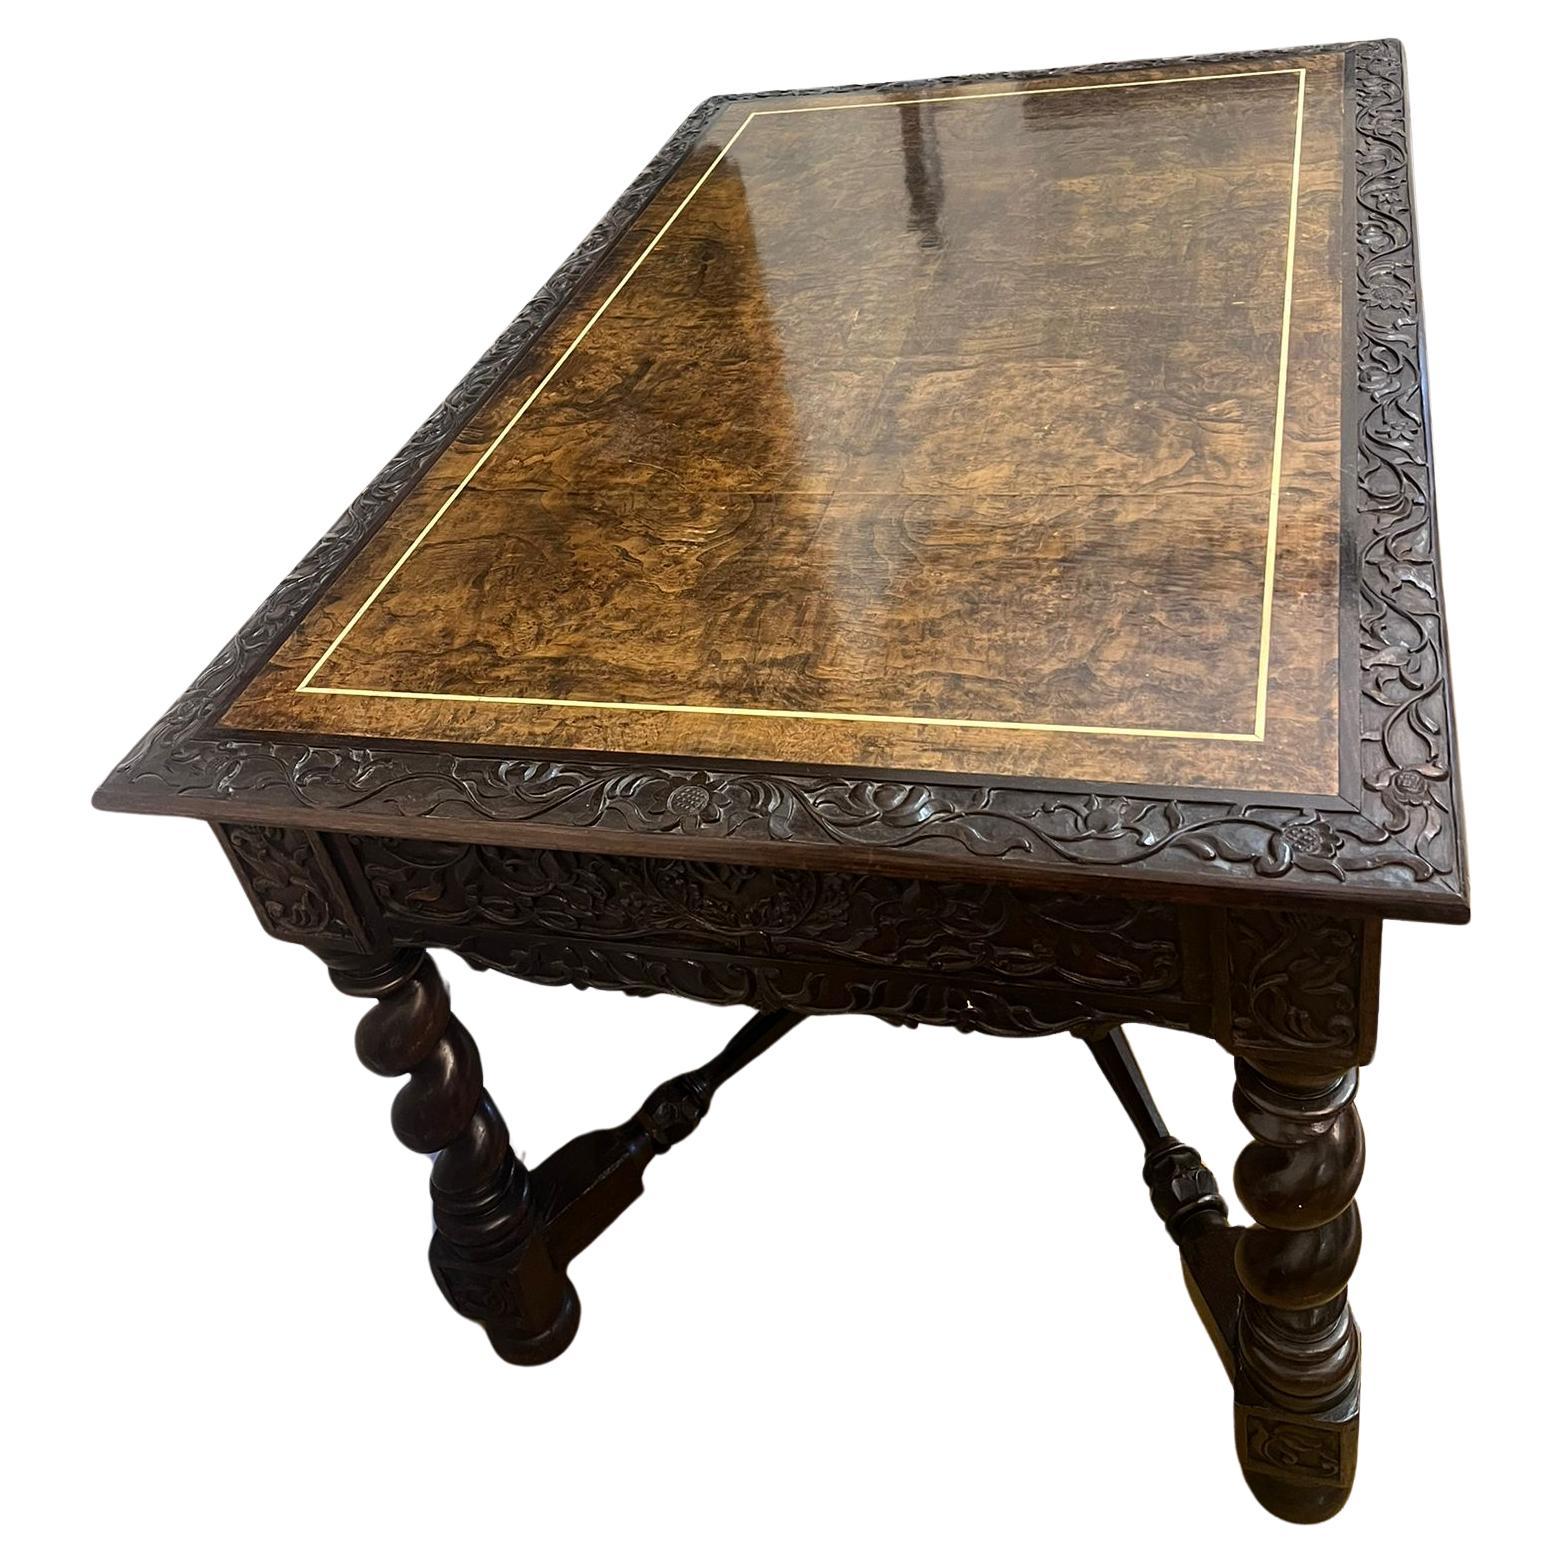 
Ein fesselndes Stück Geschichte: der Schreibtisch eines niederländischen ostindischen Kapitäns. Dieser außergewöhnliche anglo-indonesische Tisch aus dem frühen 18. Jahrhundert ist ein Beispiel für die Kunstfertigkeit der damaligen Zeit, geschnitzt